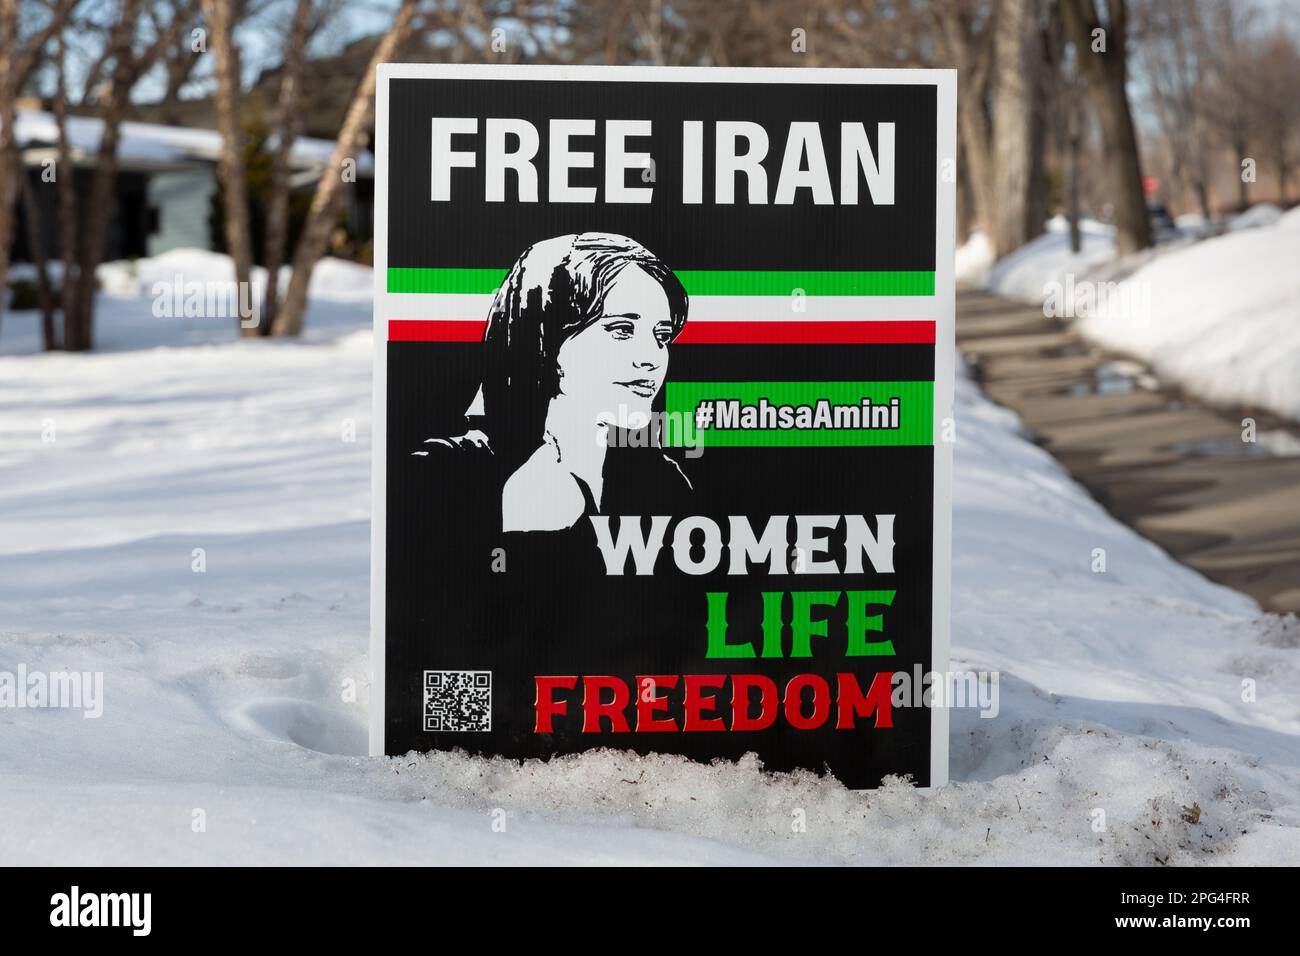 Free Iran Protest Yard Schild mit dem Slogan Women Life Freedom und einem Porträt der iranischen Frau Mahsa Amina aus Saqqez, Provinz Kurdistan Stockfoto